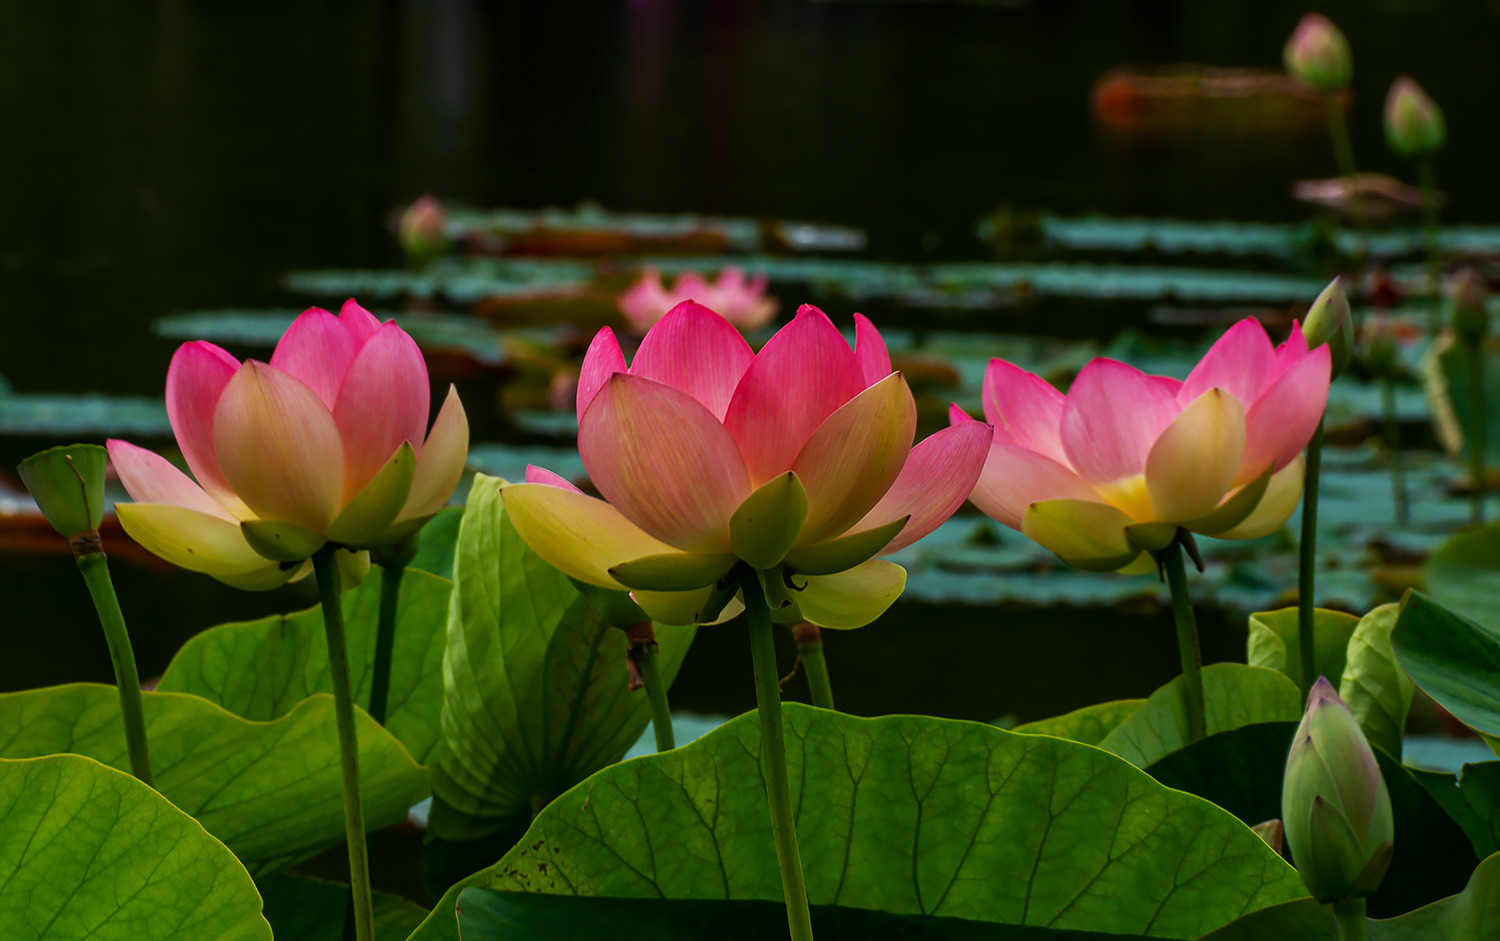 Lotusblumen (Nelumbo)